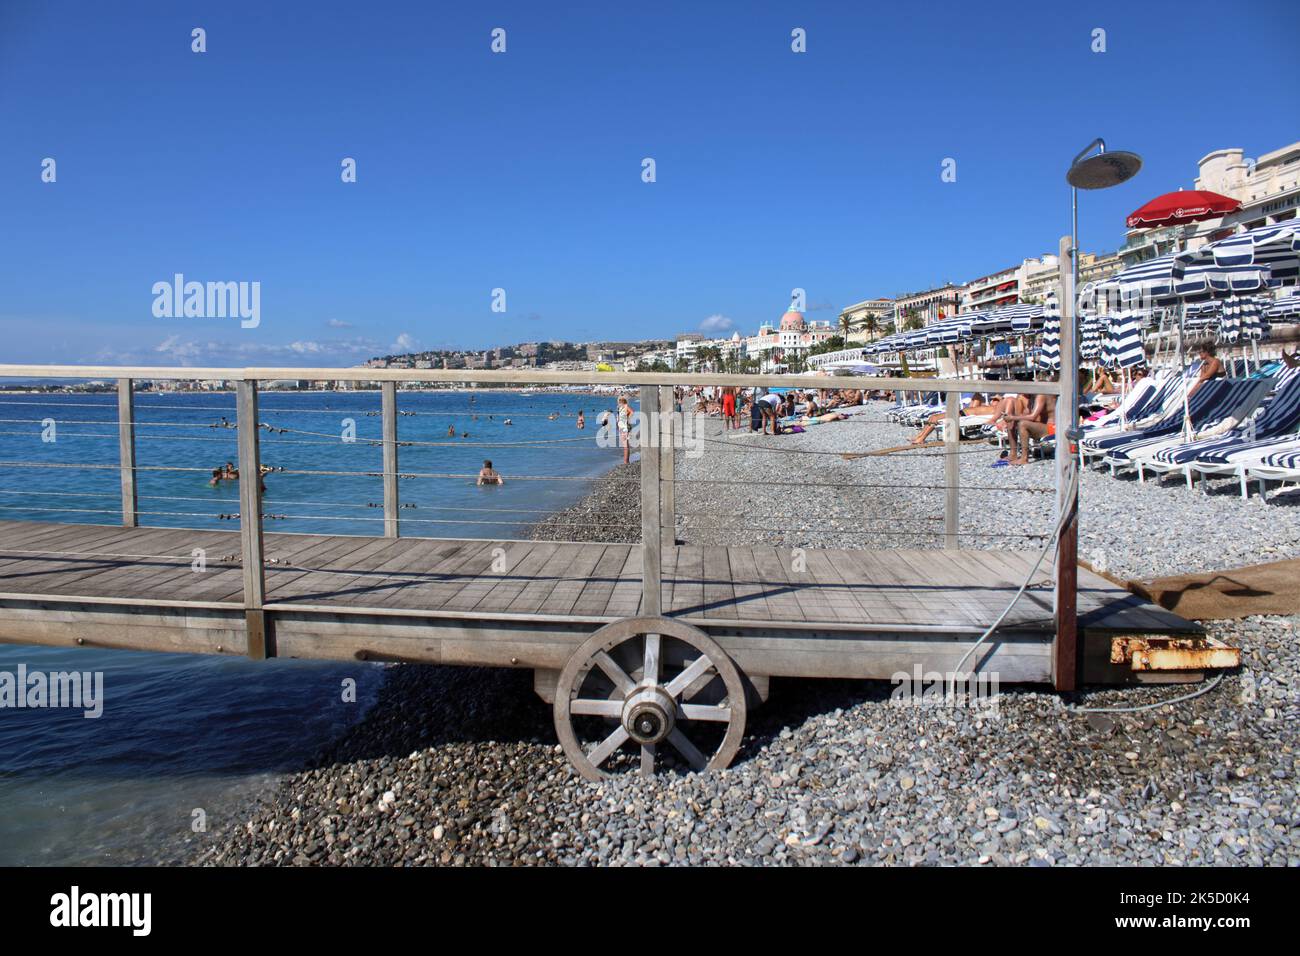 Vue d'été sur la plage de Ruhl Plage située le long de la Promenade des Anglais à Nice sur la Côte d'Azur dans le sud de la France. Banque D'Images